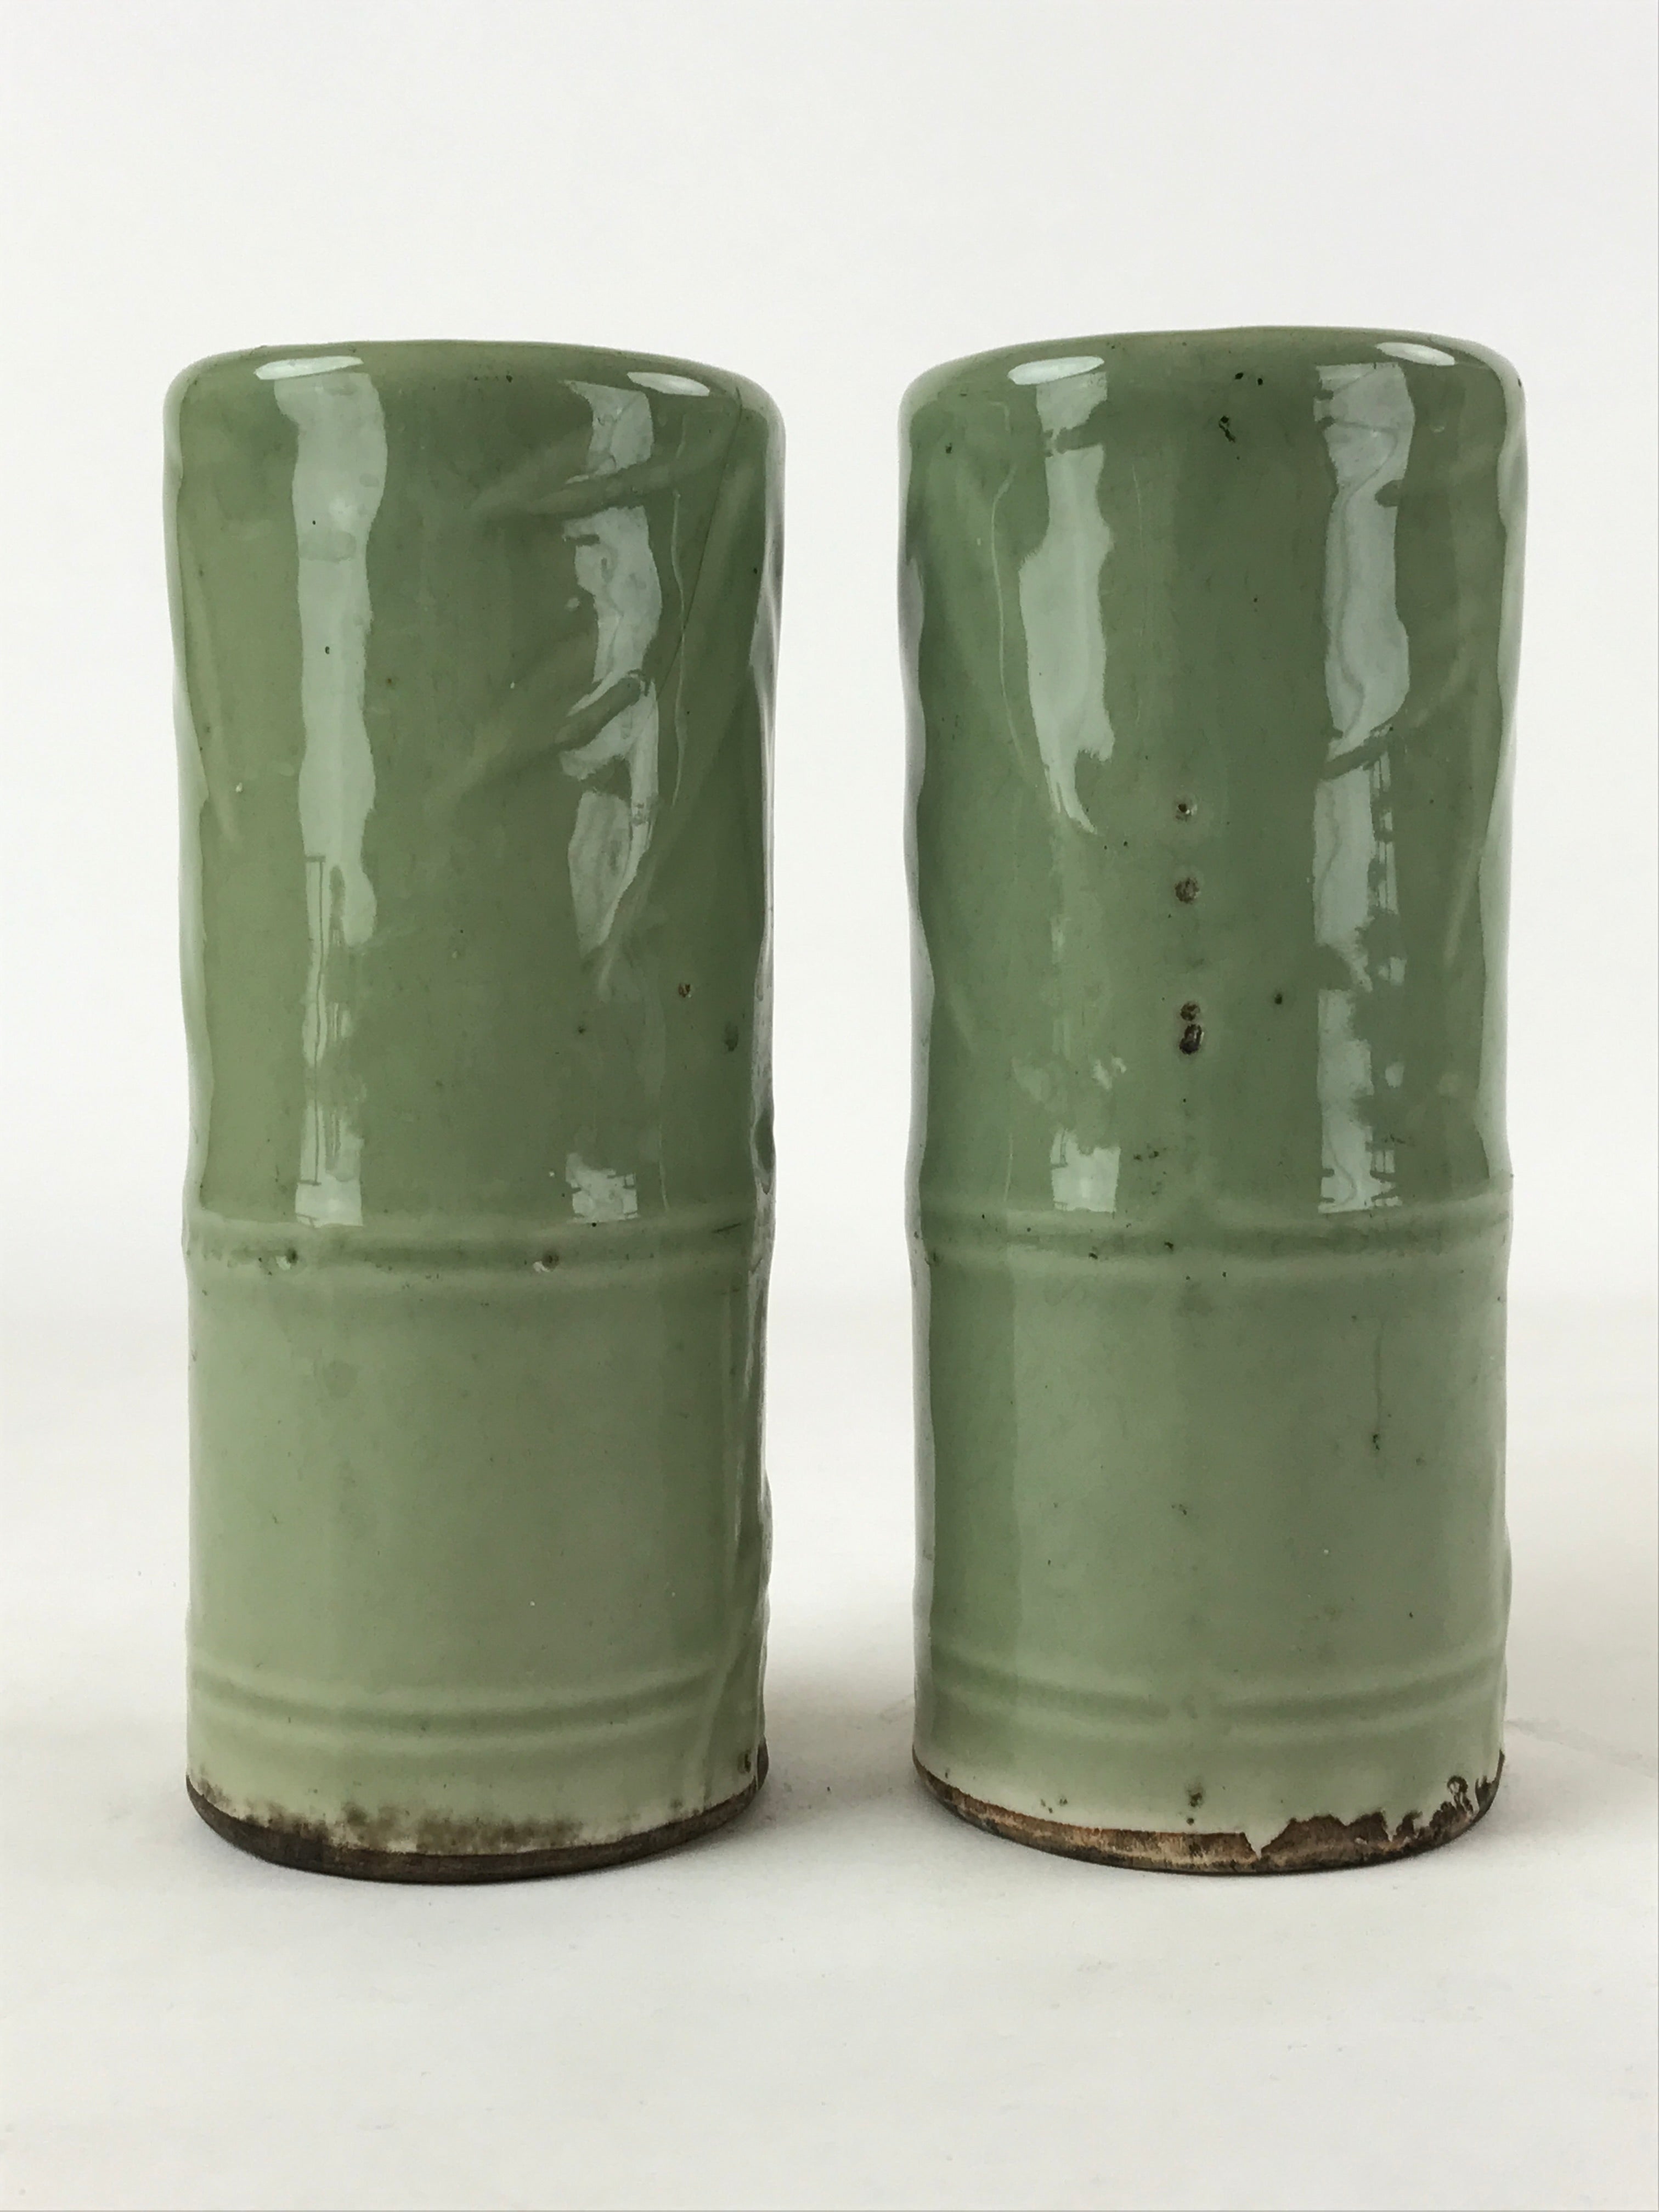 Antique Japanese Ceramic Flower Vase 2pcs Kabin Metal Stand Ikebana Green FK82